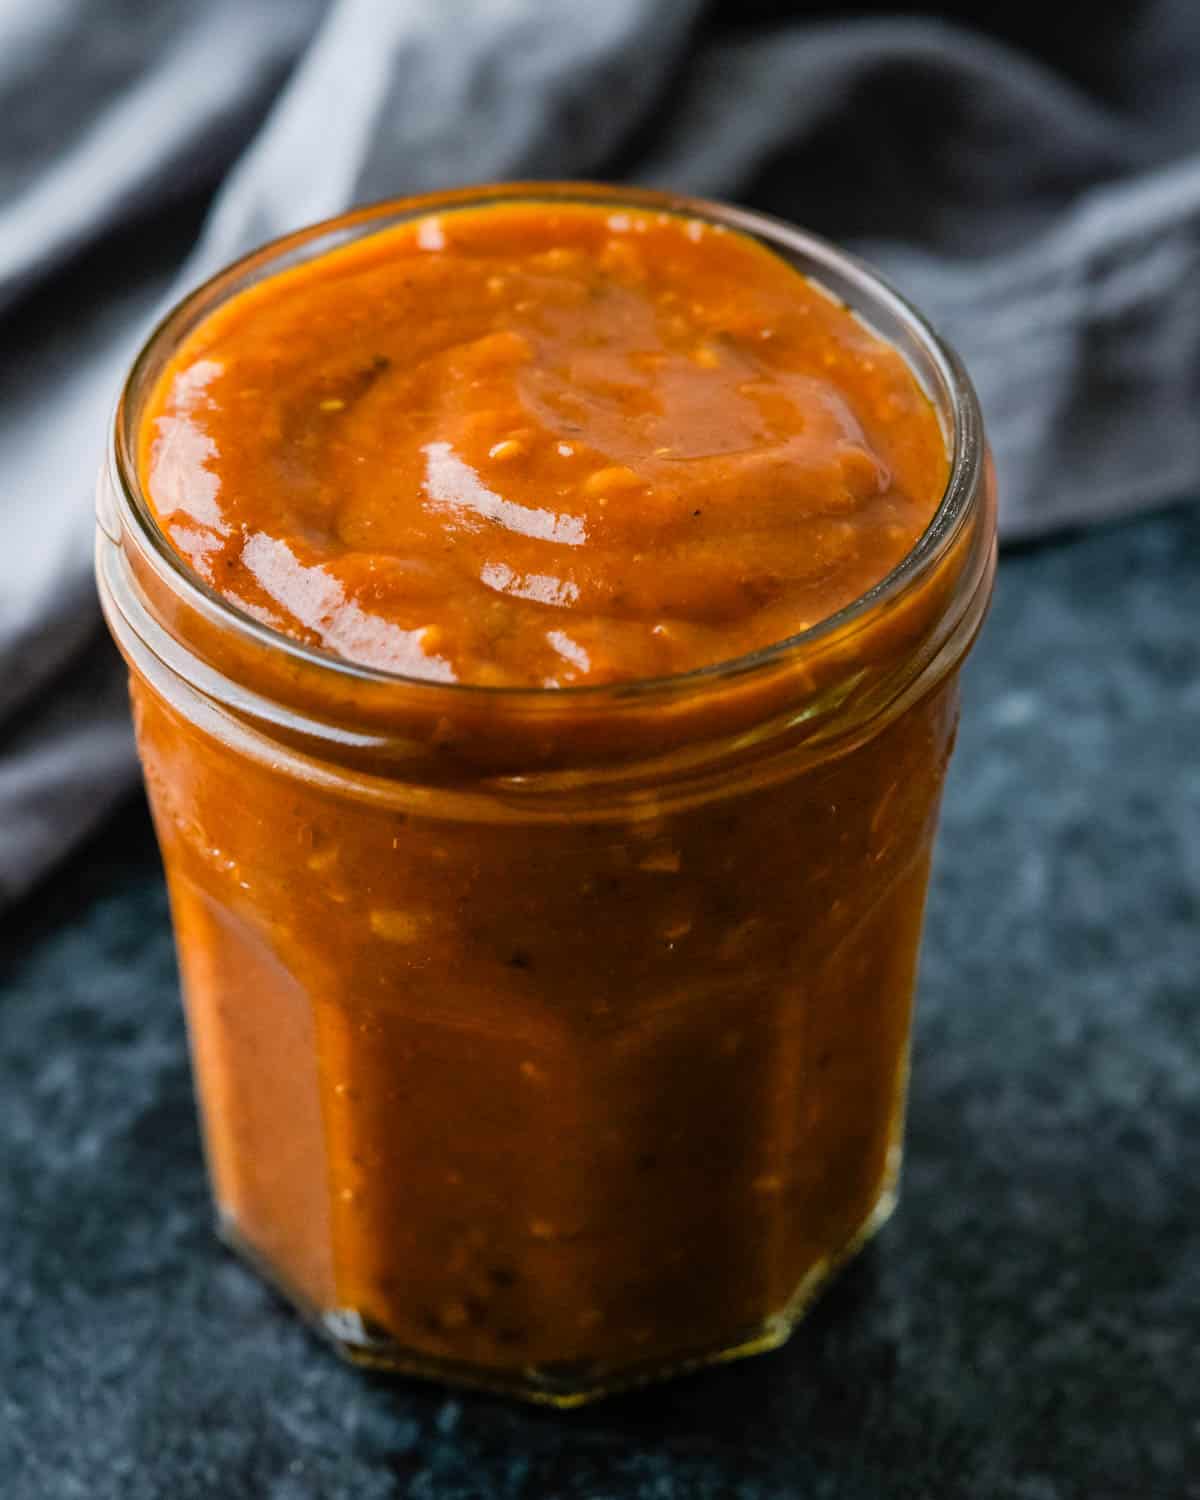 A jar of red enchilada sauce.